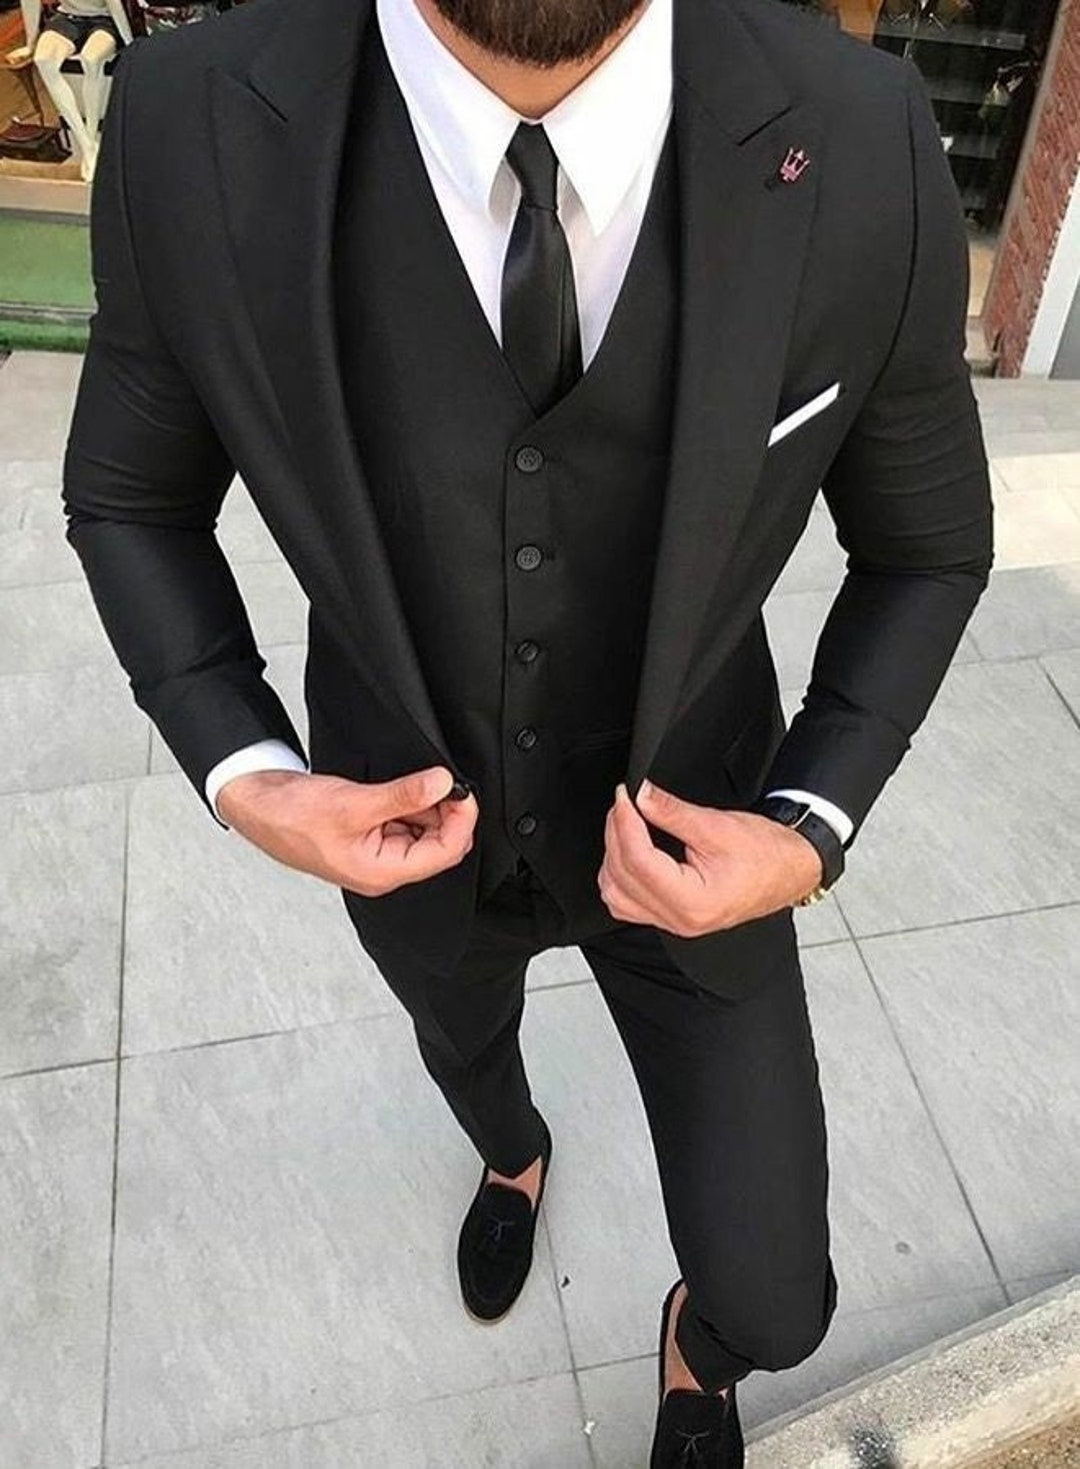 Men Black Suit Elegant Wedding Suit Black Three Piece - Etsy